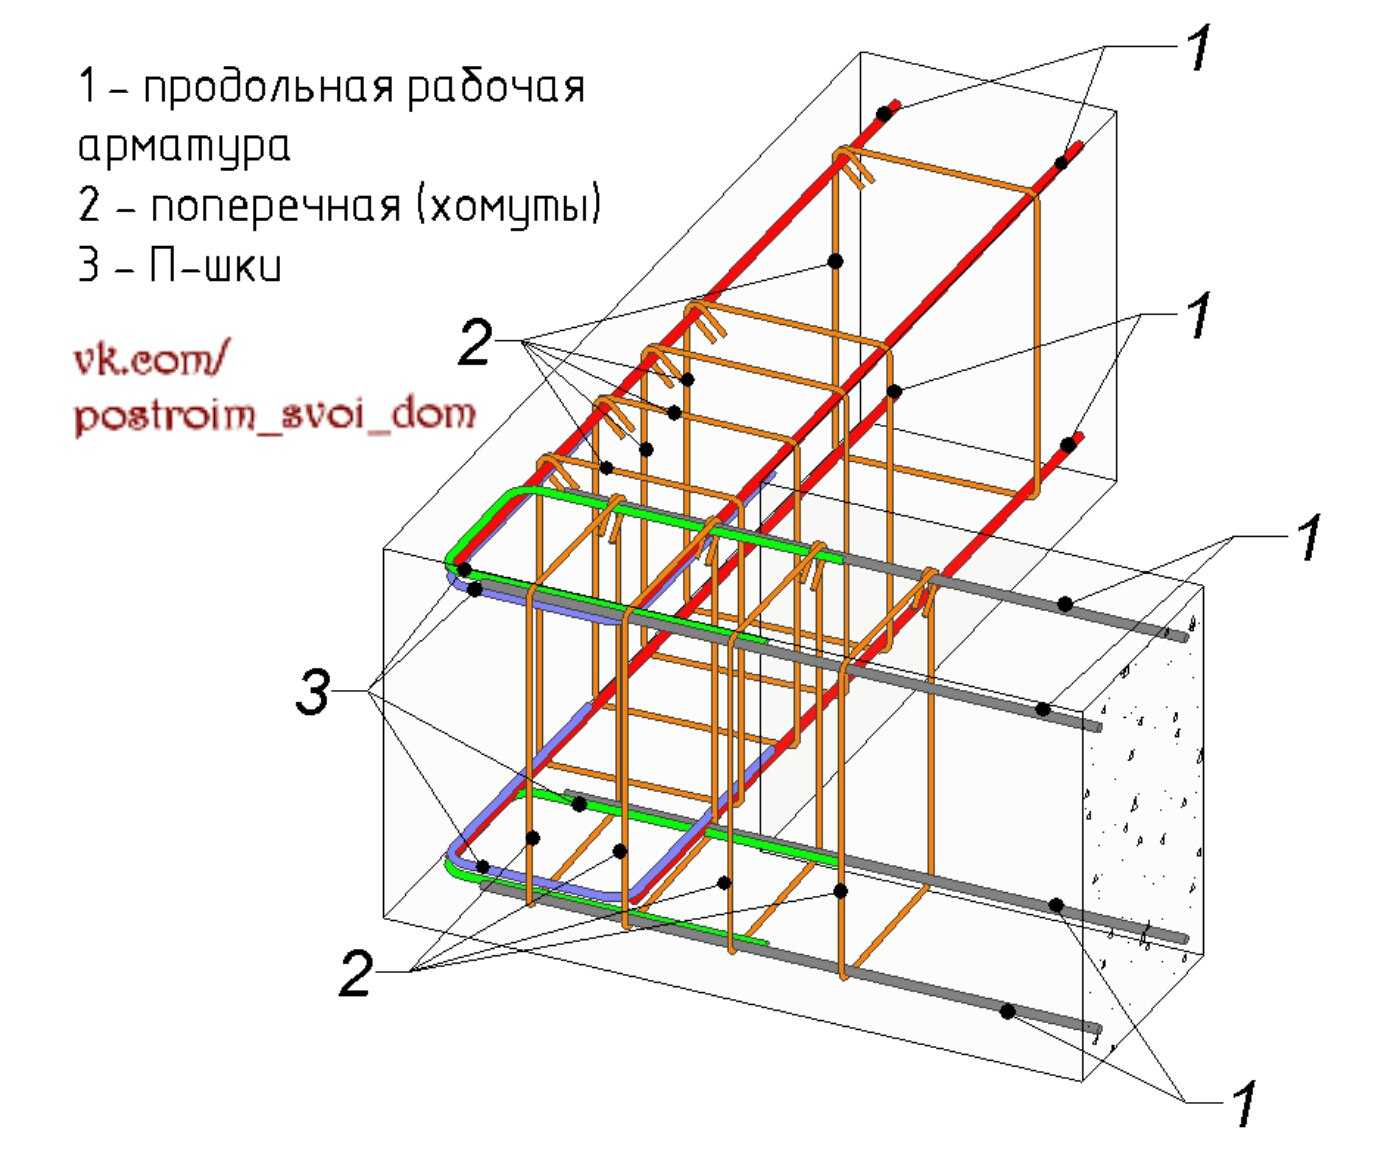 Арматура для фундамента: правила расчета количества и размеров для различных конструкций